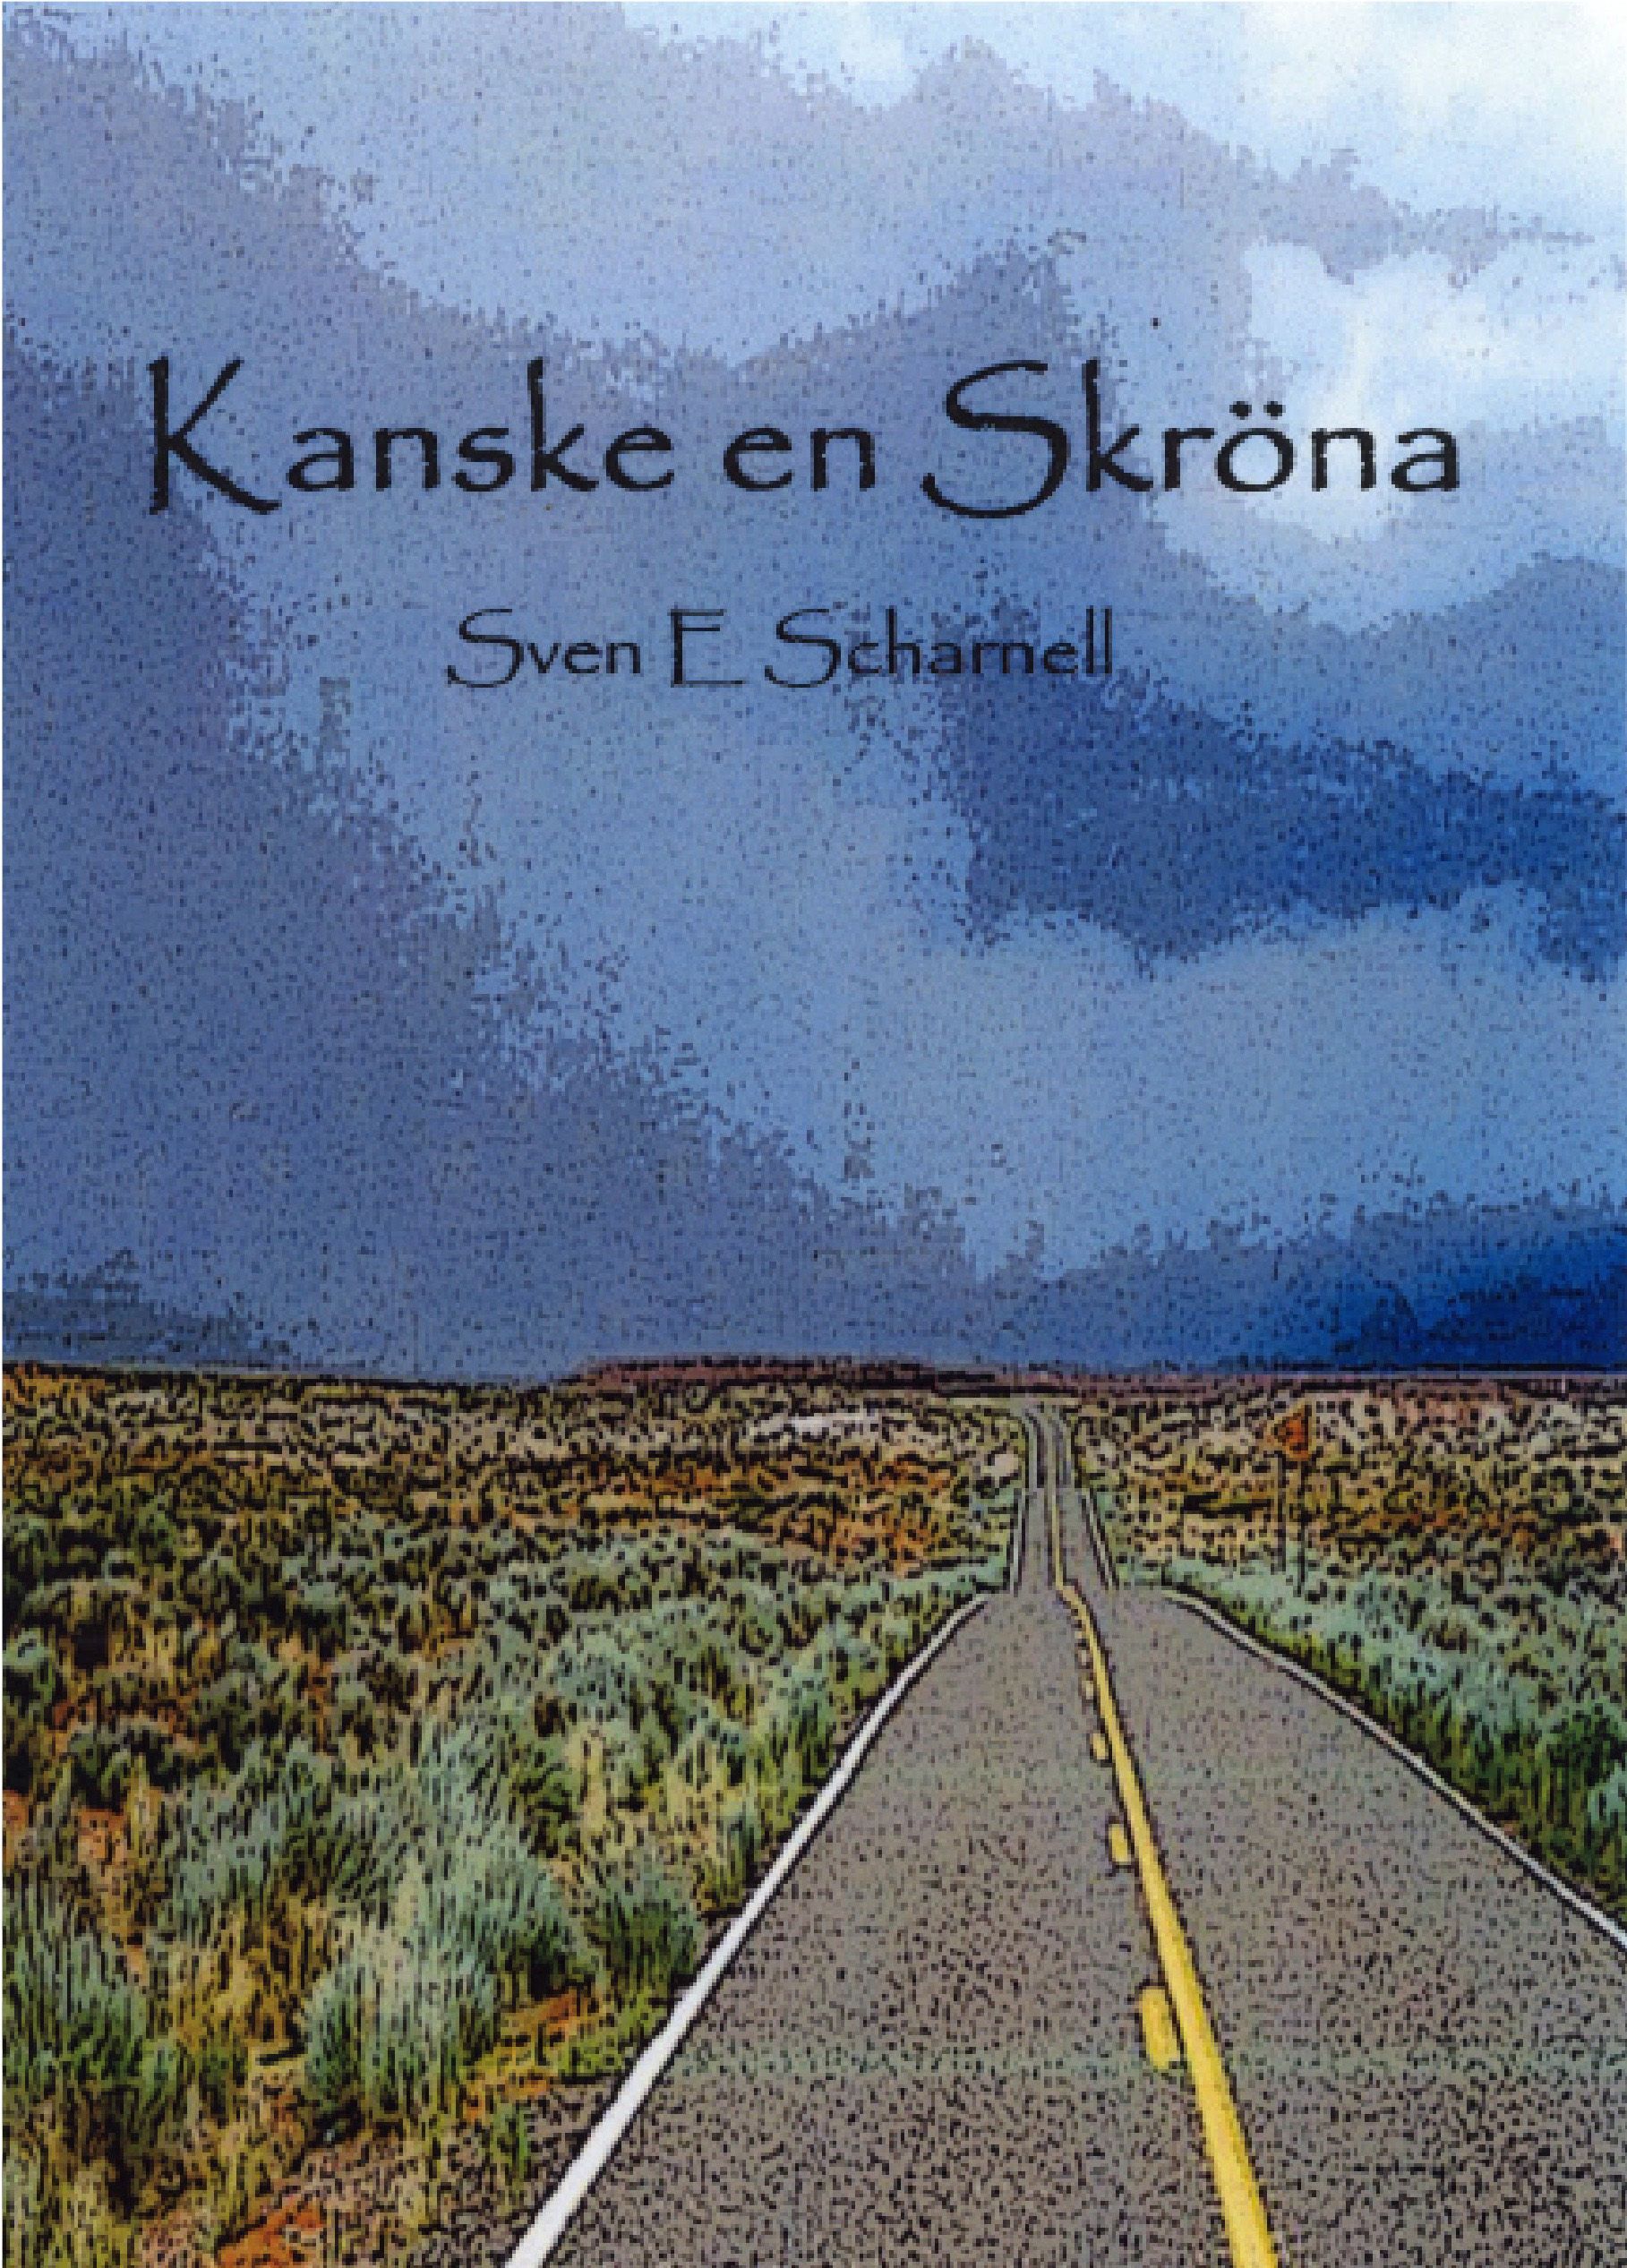 Kanske en Skröna, eBook by Sven E Scharnell